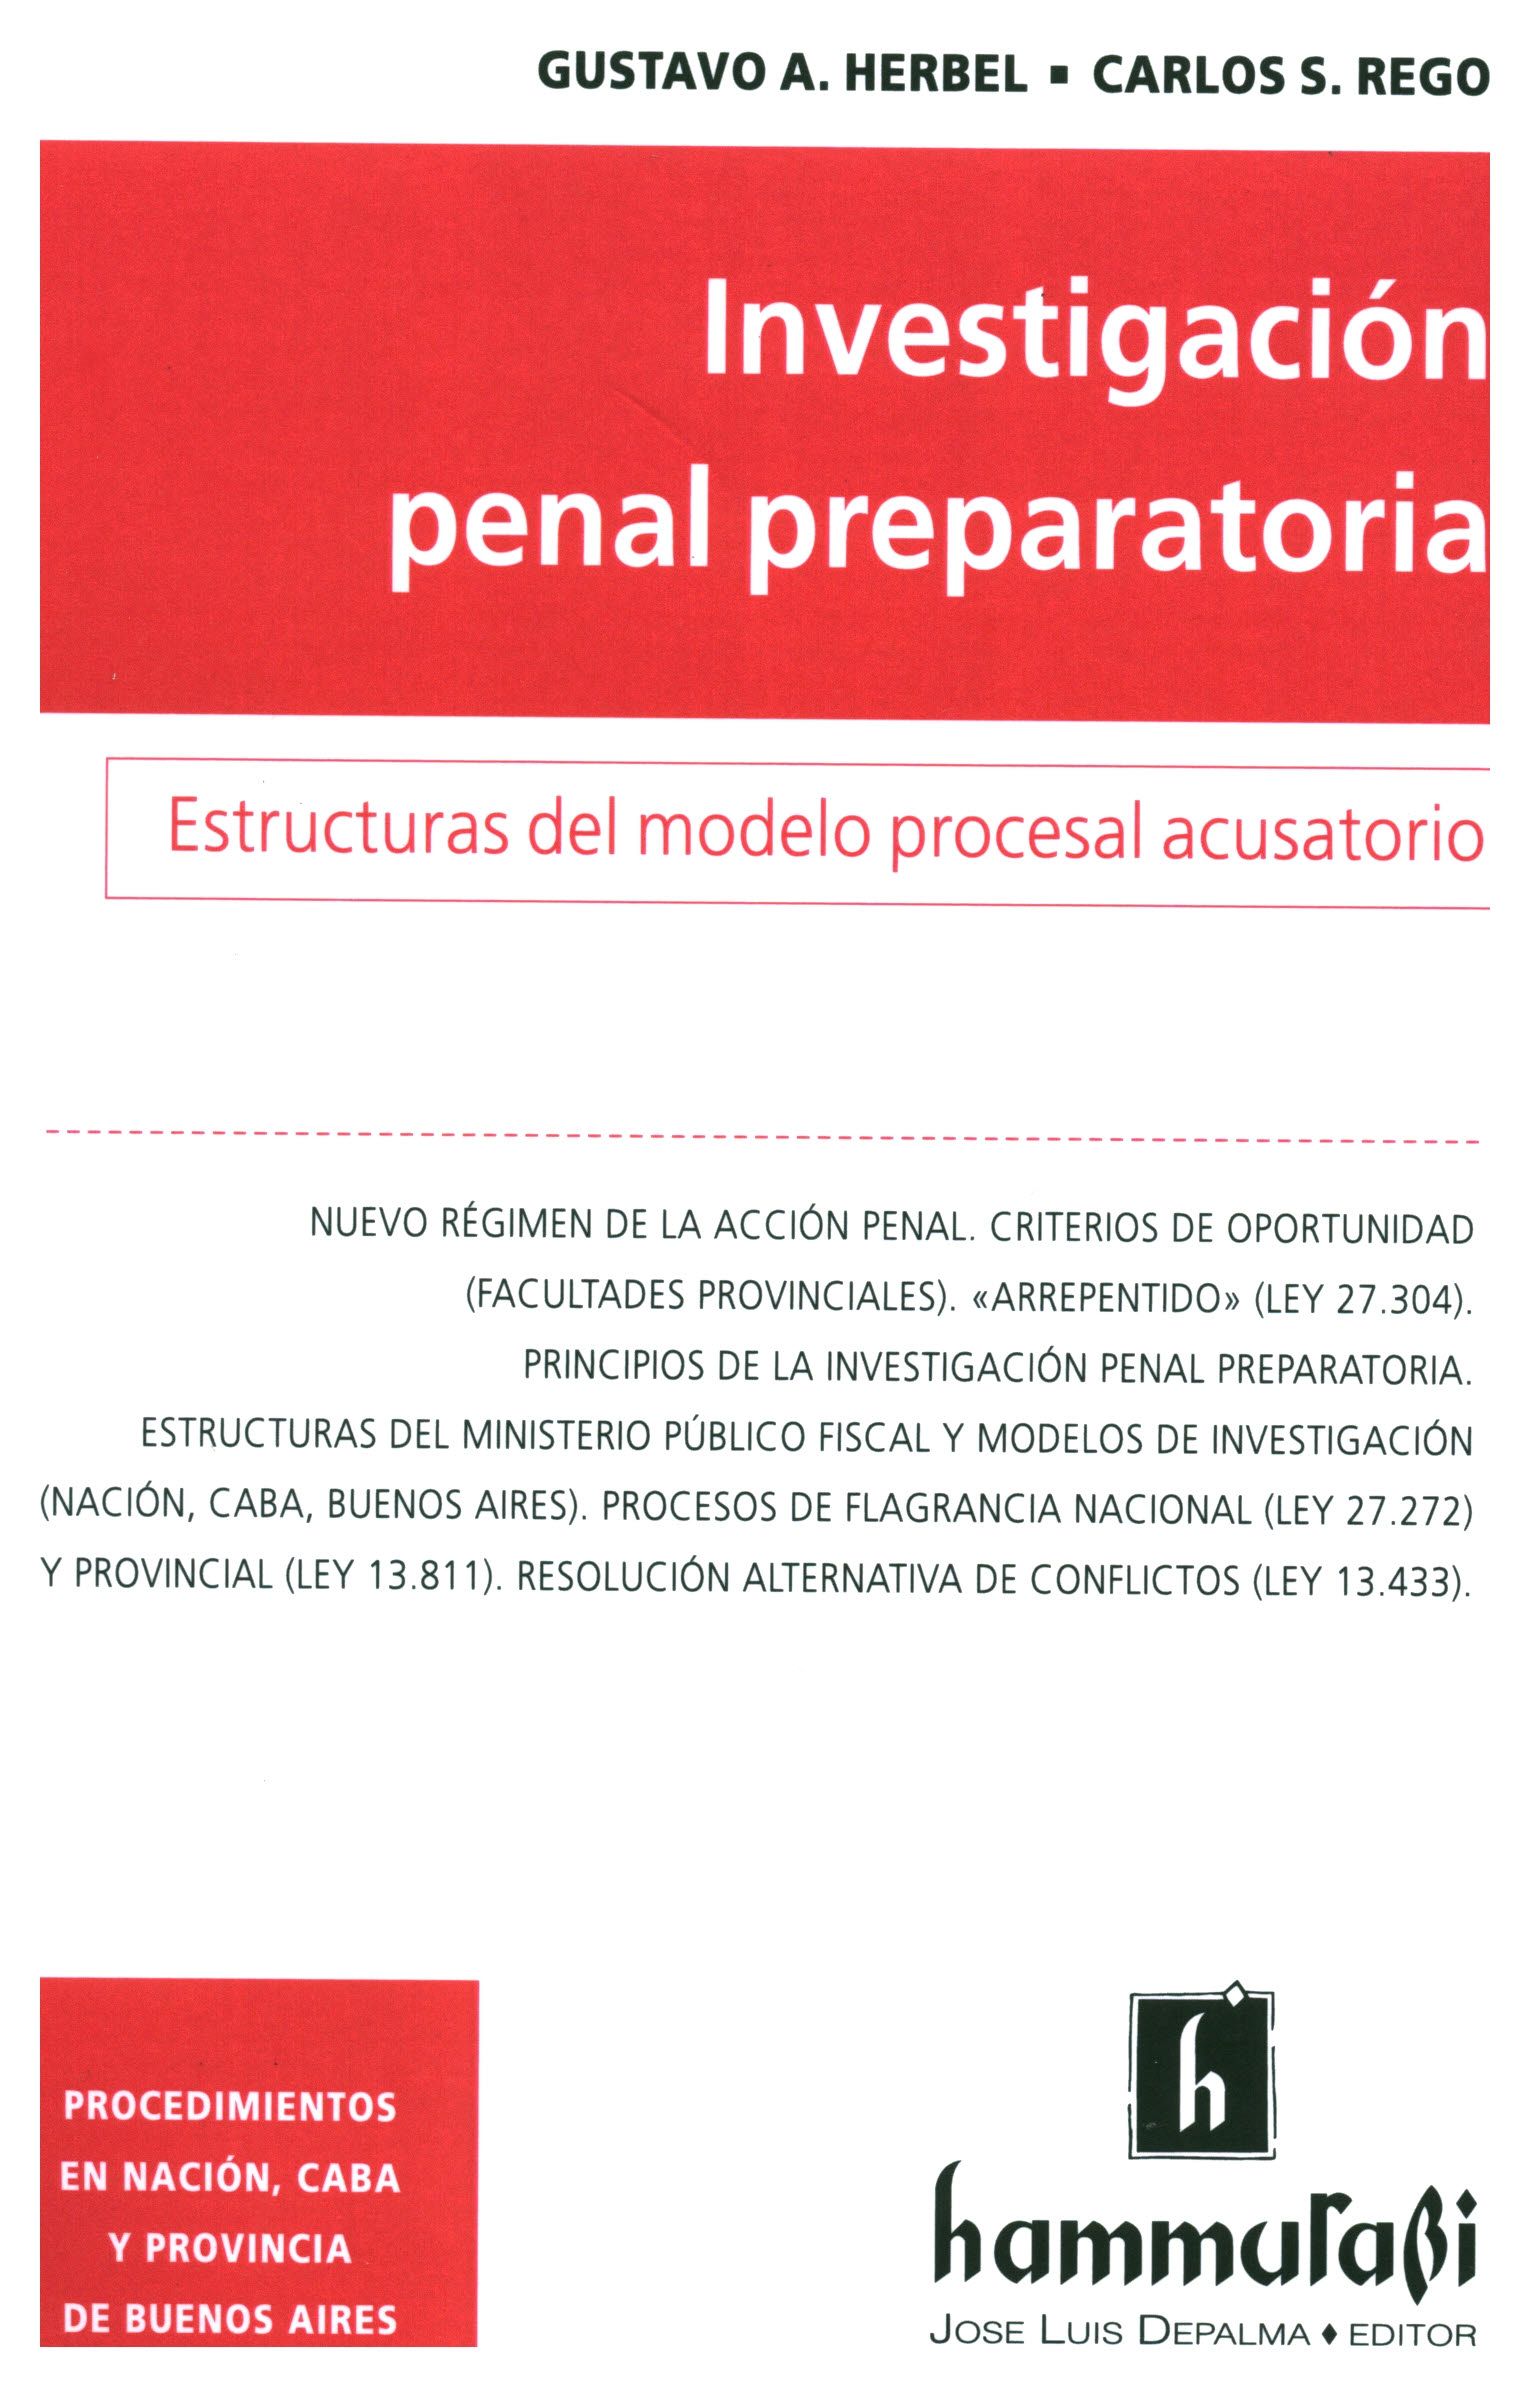 Investigación penal preparatoria. Estructuras del modelo procesal acusatorio.